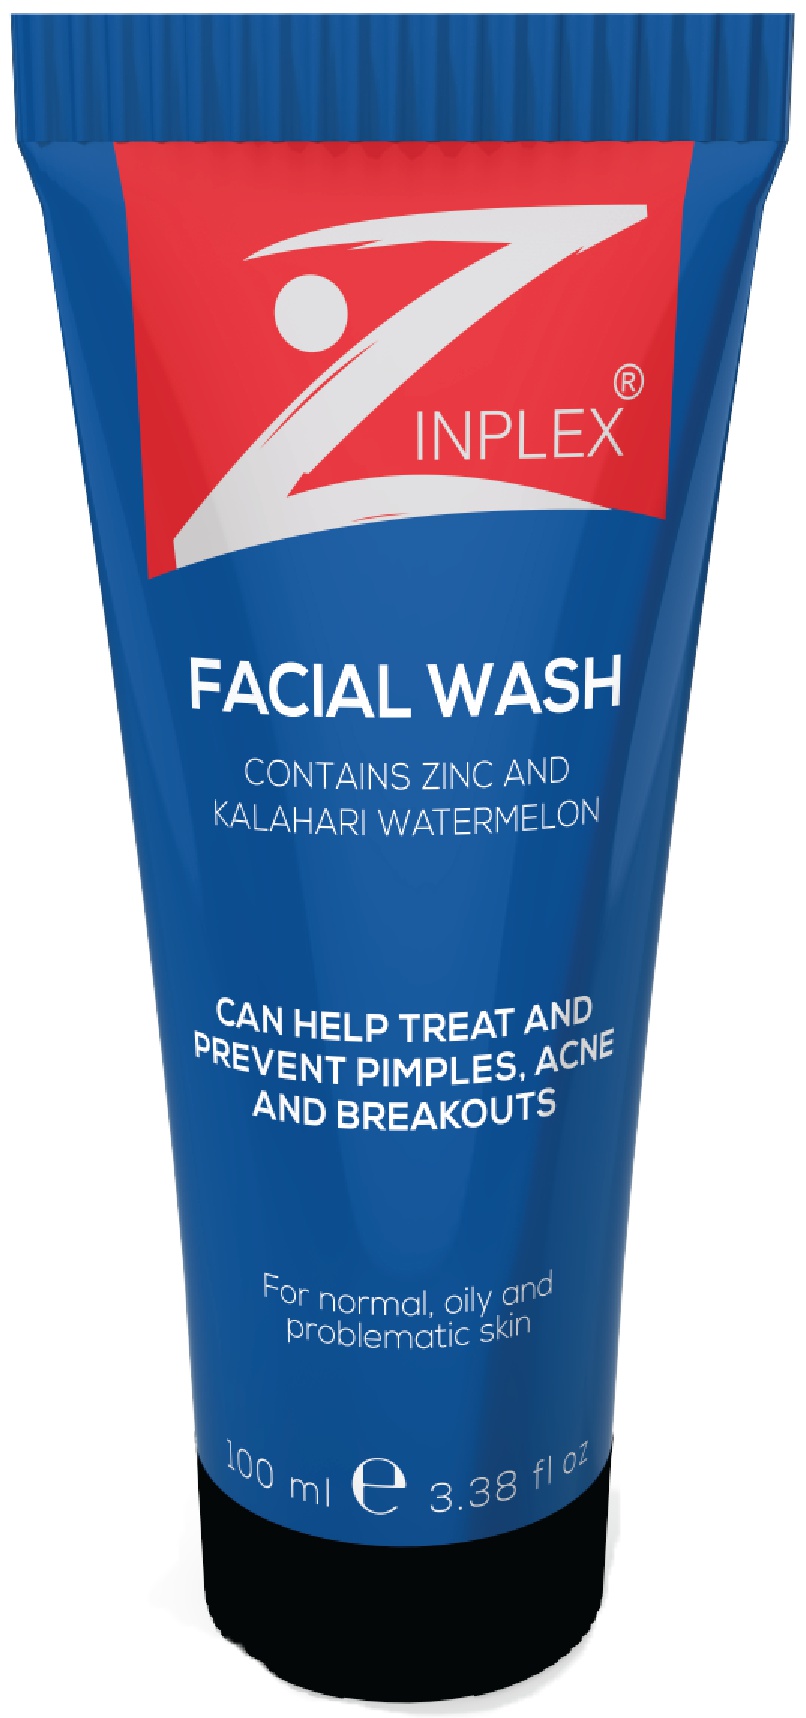 Zinplex Facial Wash